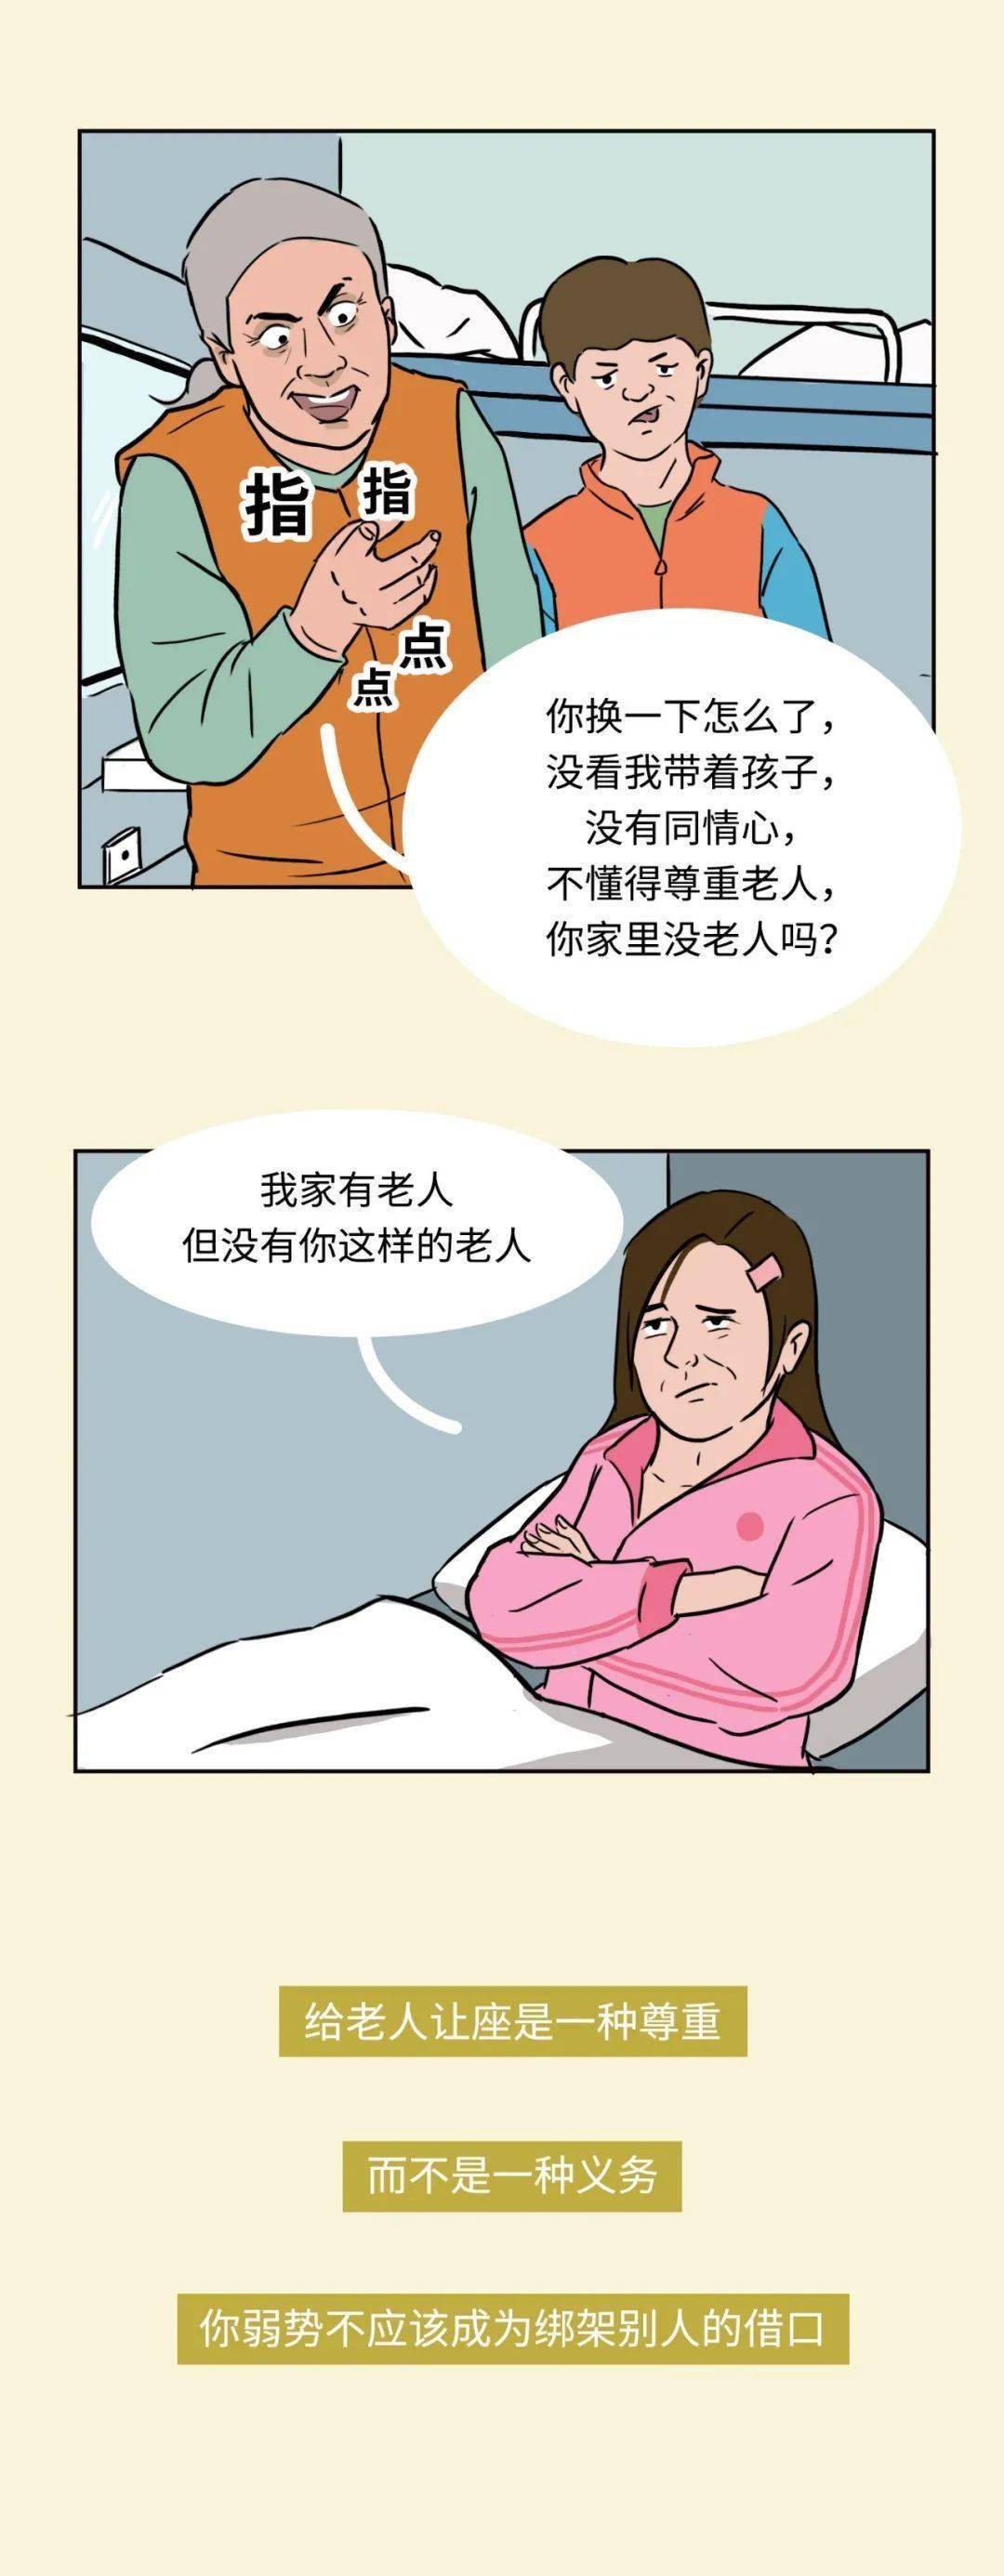 这些典型的中国式道德绑架你最不能忍哪个漫画